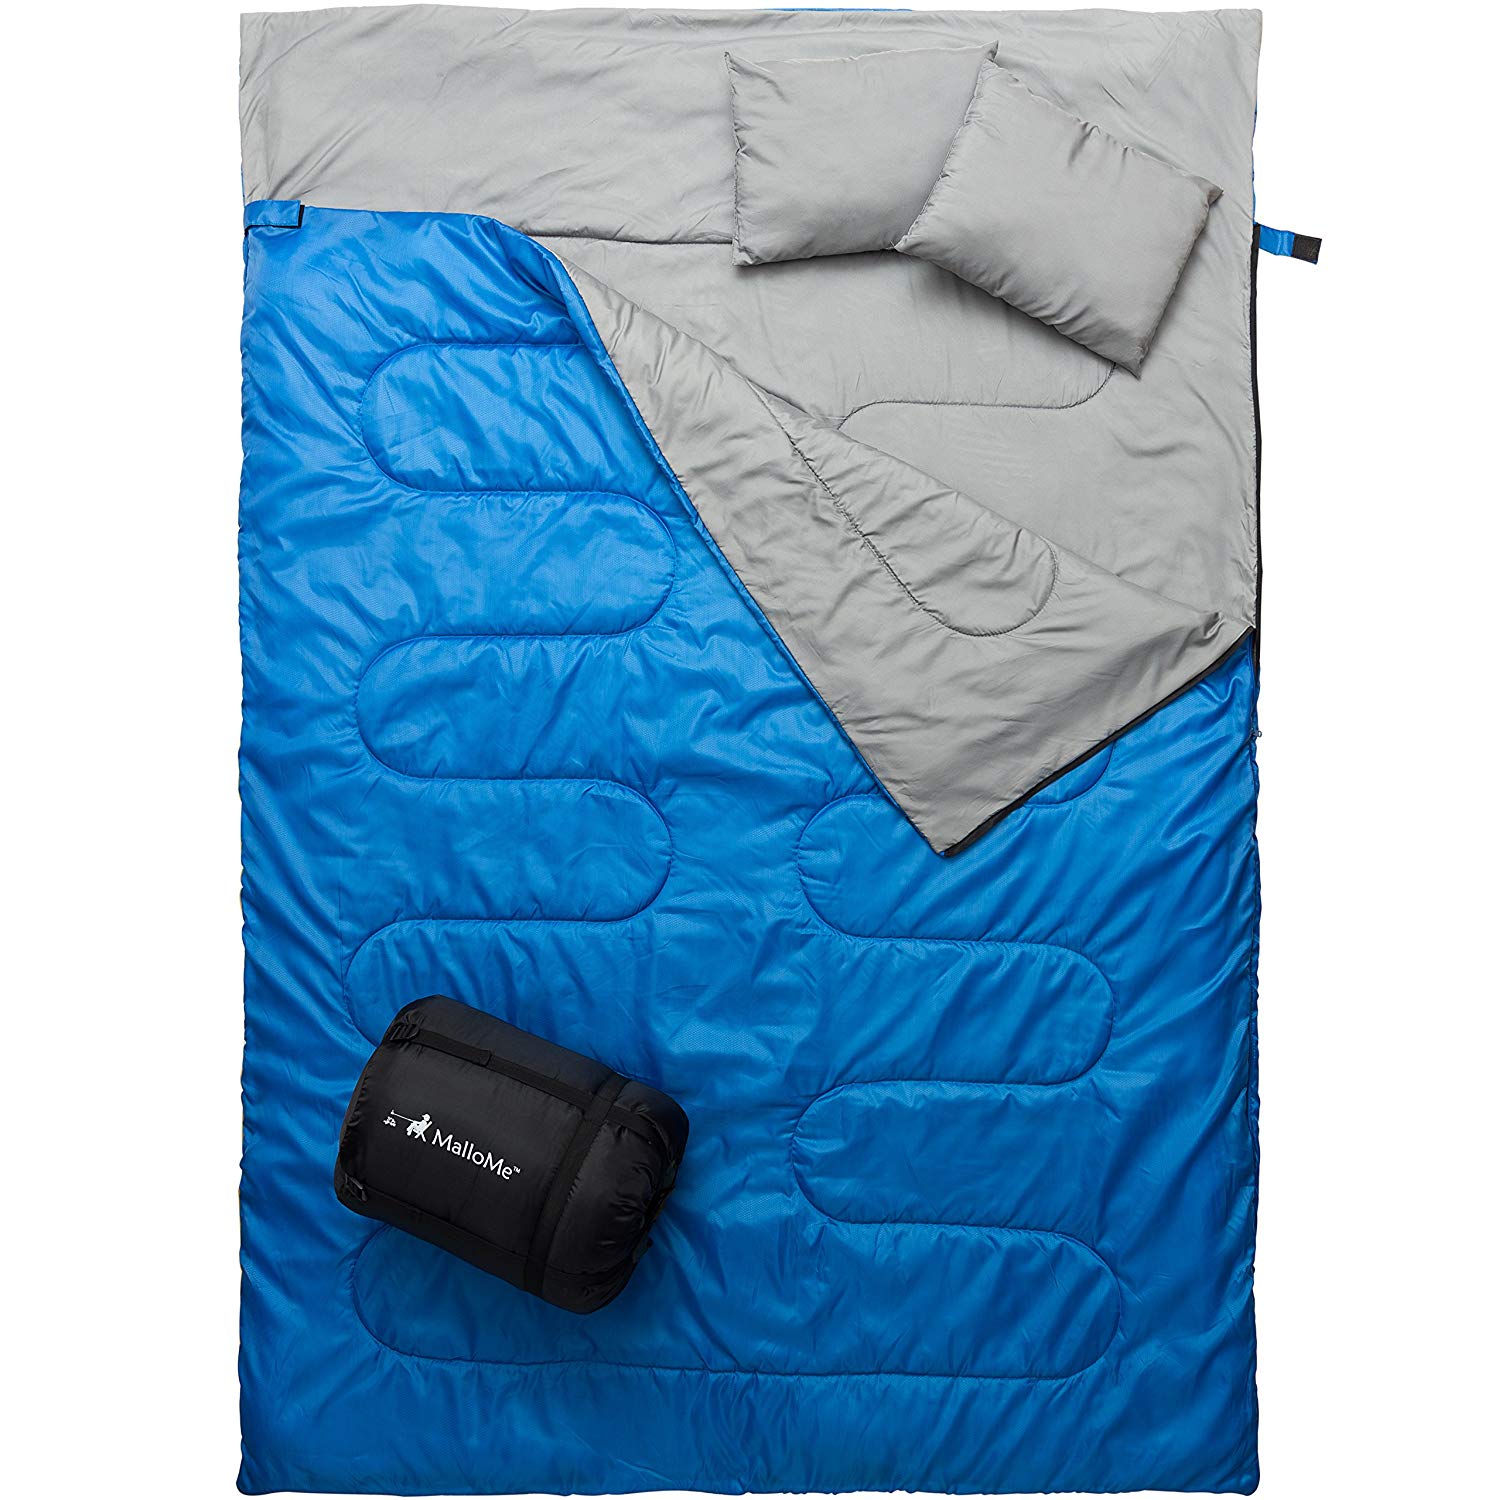 Camping Sleeping Bag- MalloMe